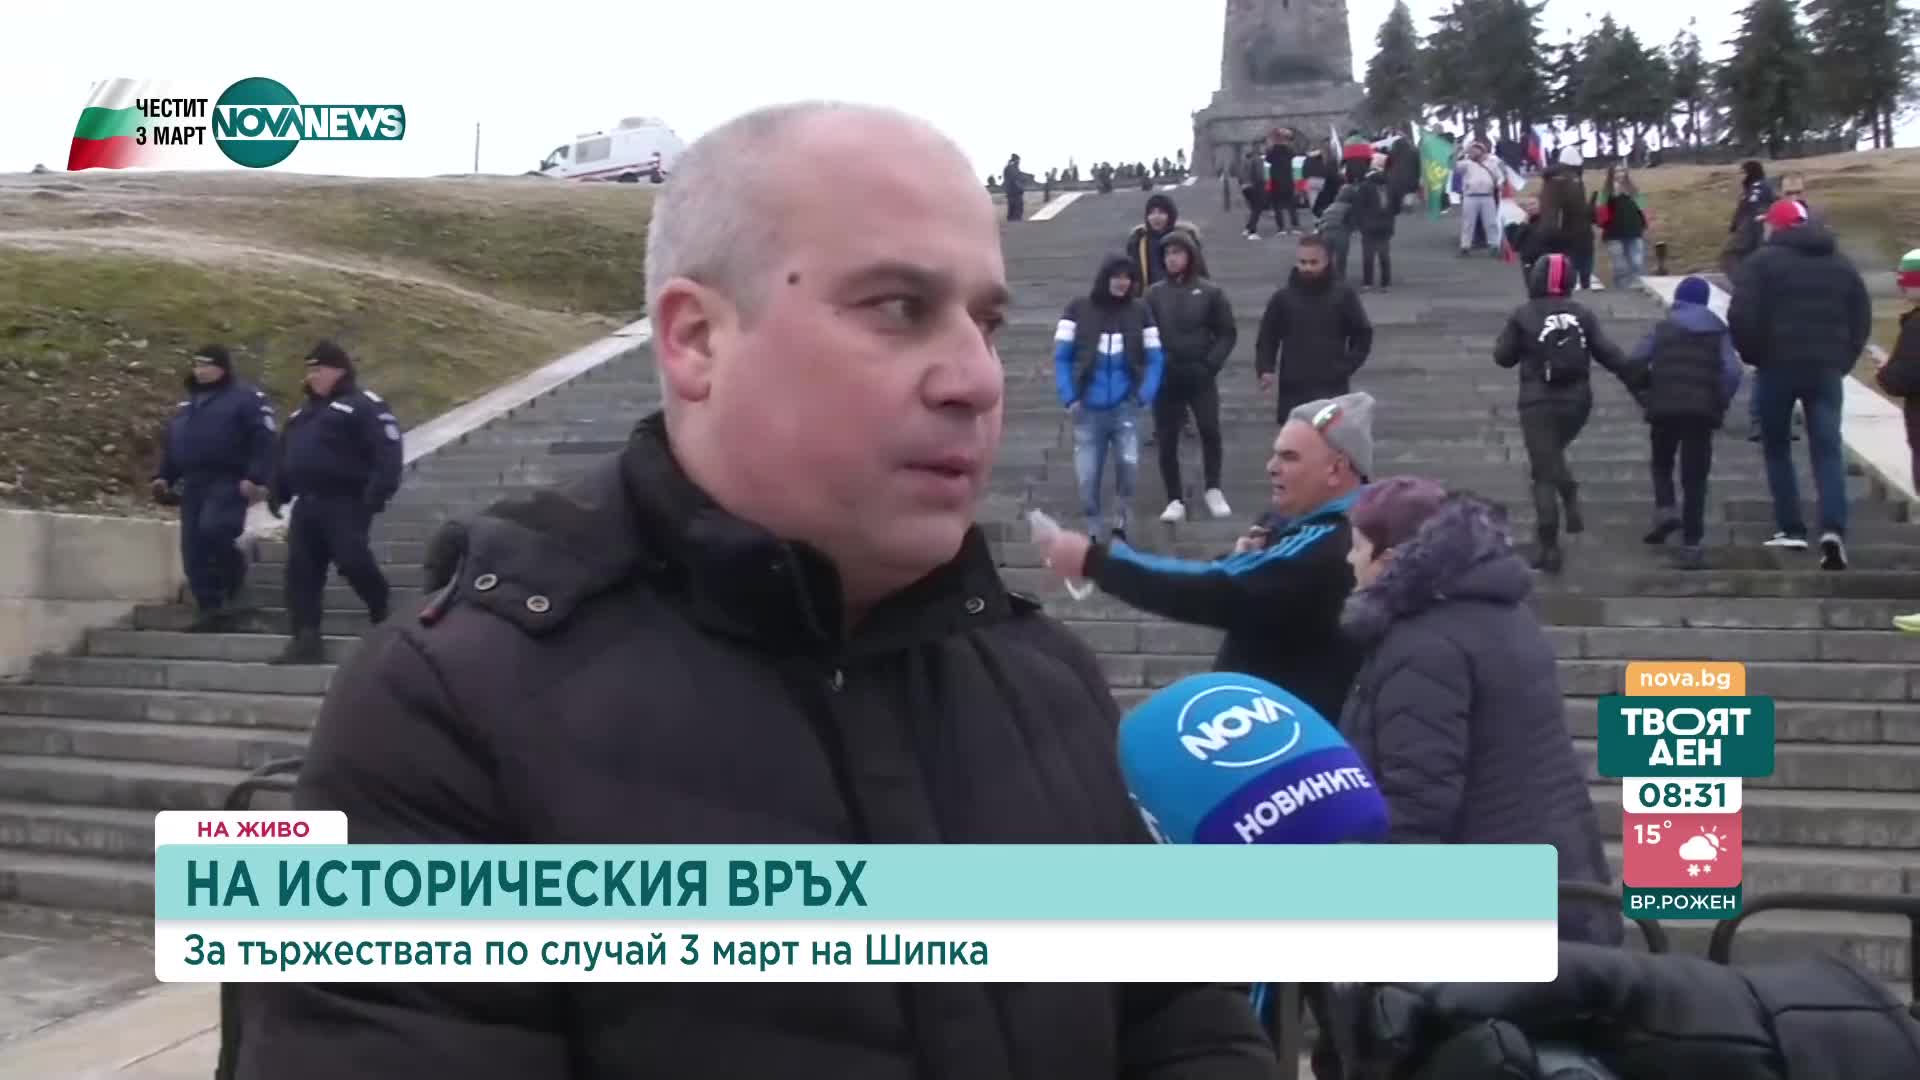 Българи от цялата страна се отправиха към паметника "Шипка"